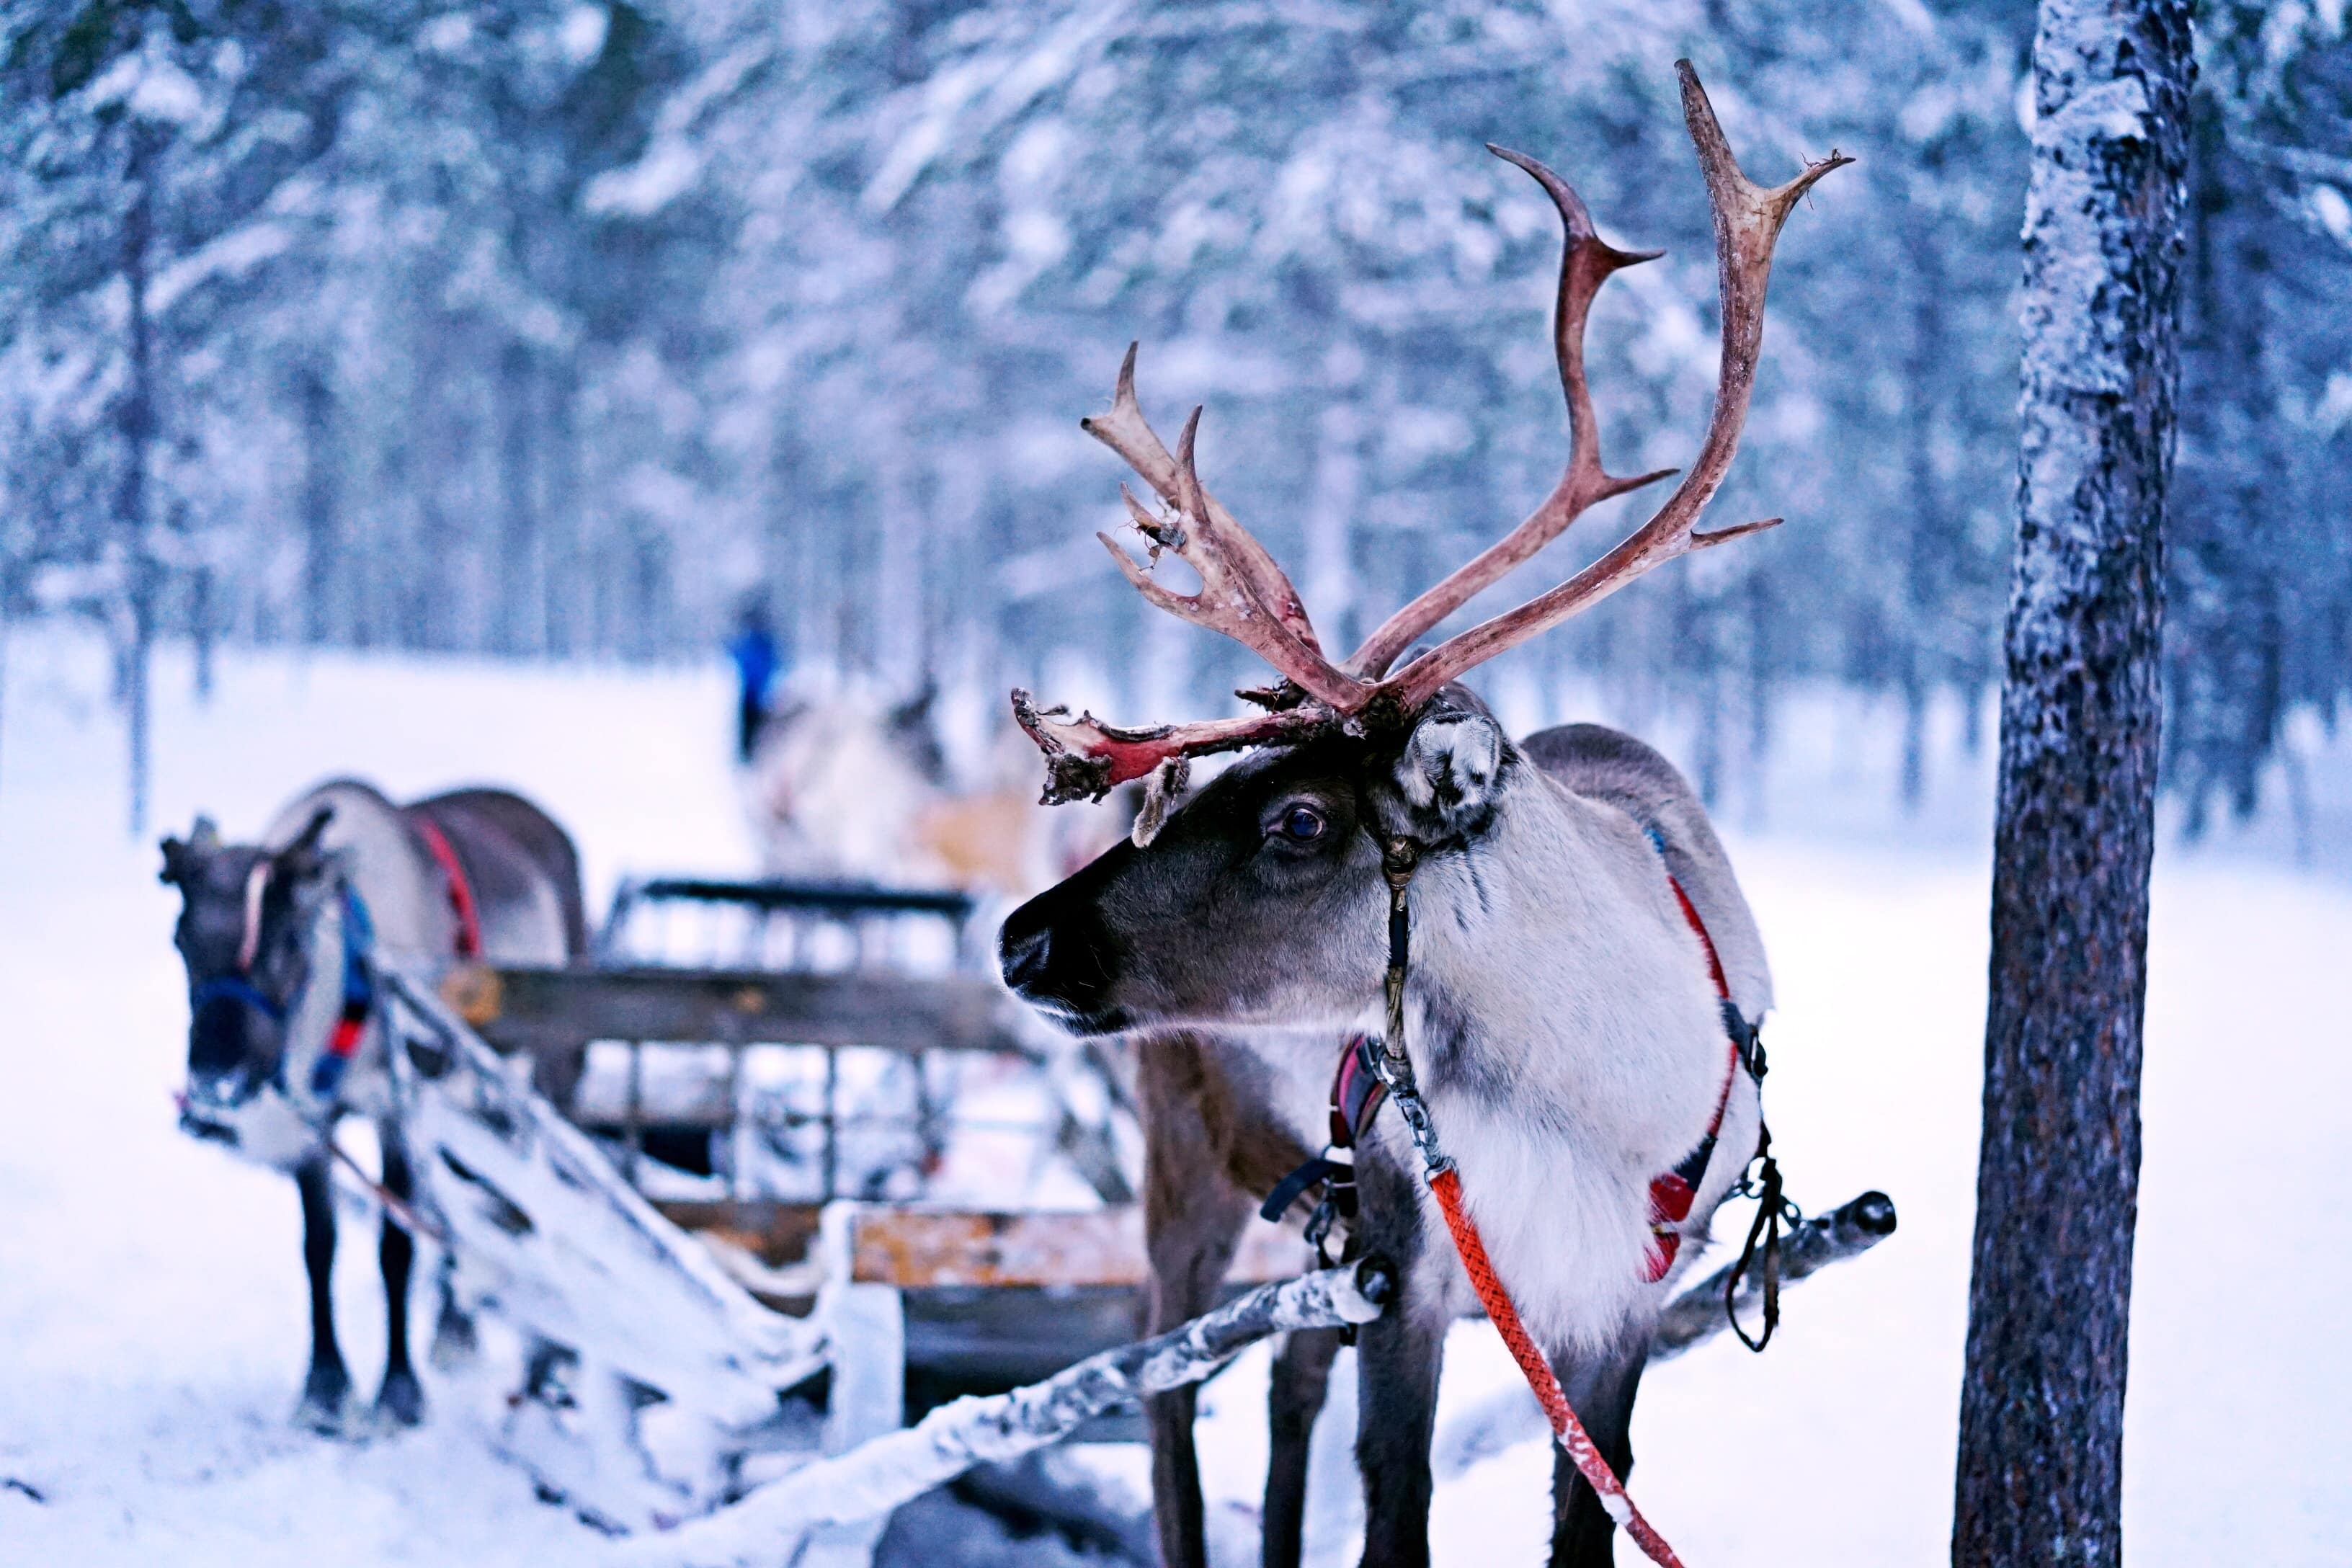 Reindeer in snow, STOCK